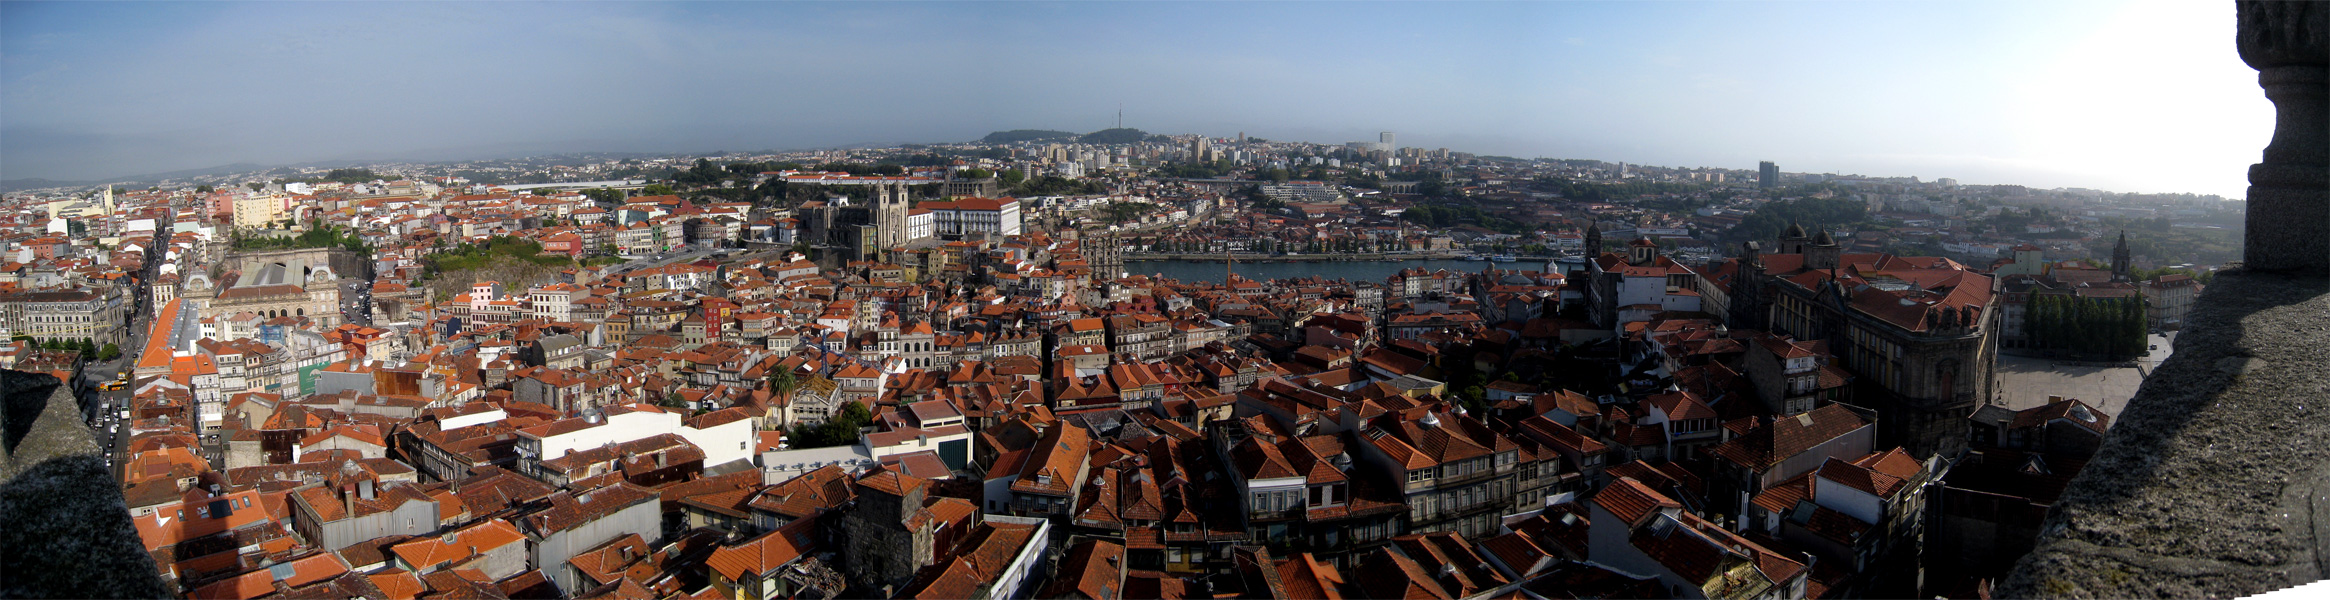 [- Telhados -] Torre dos Clérigos, Porto (Portugal)